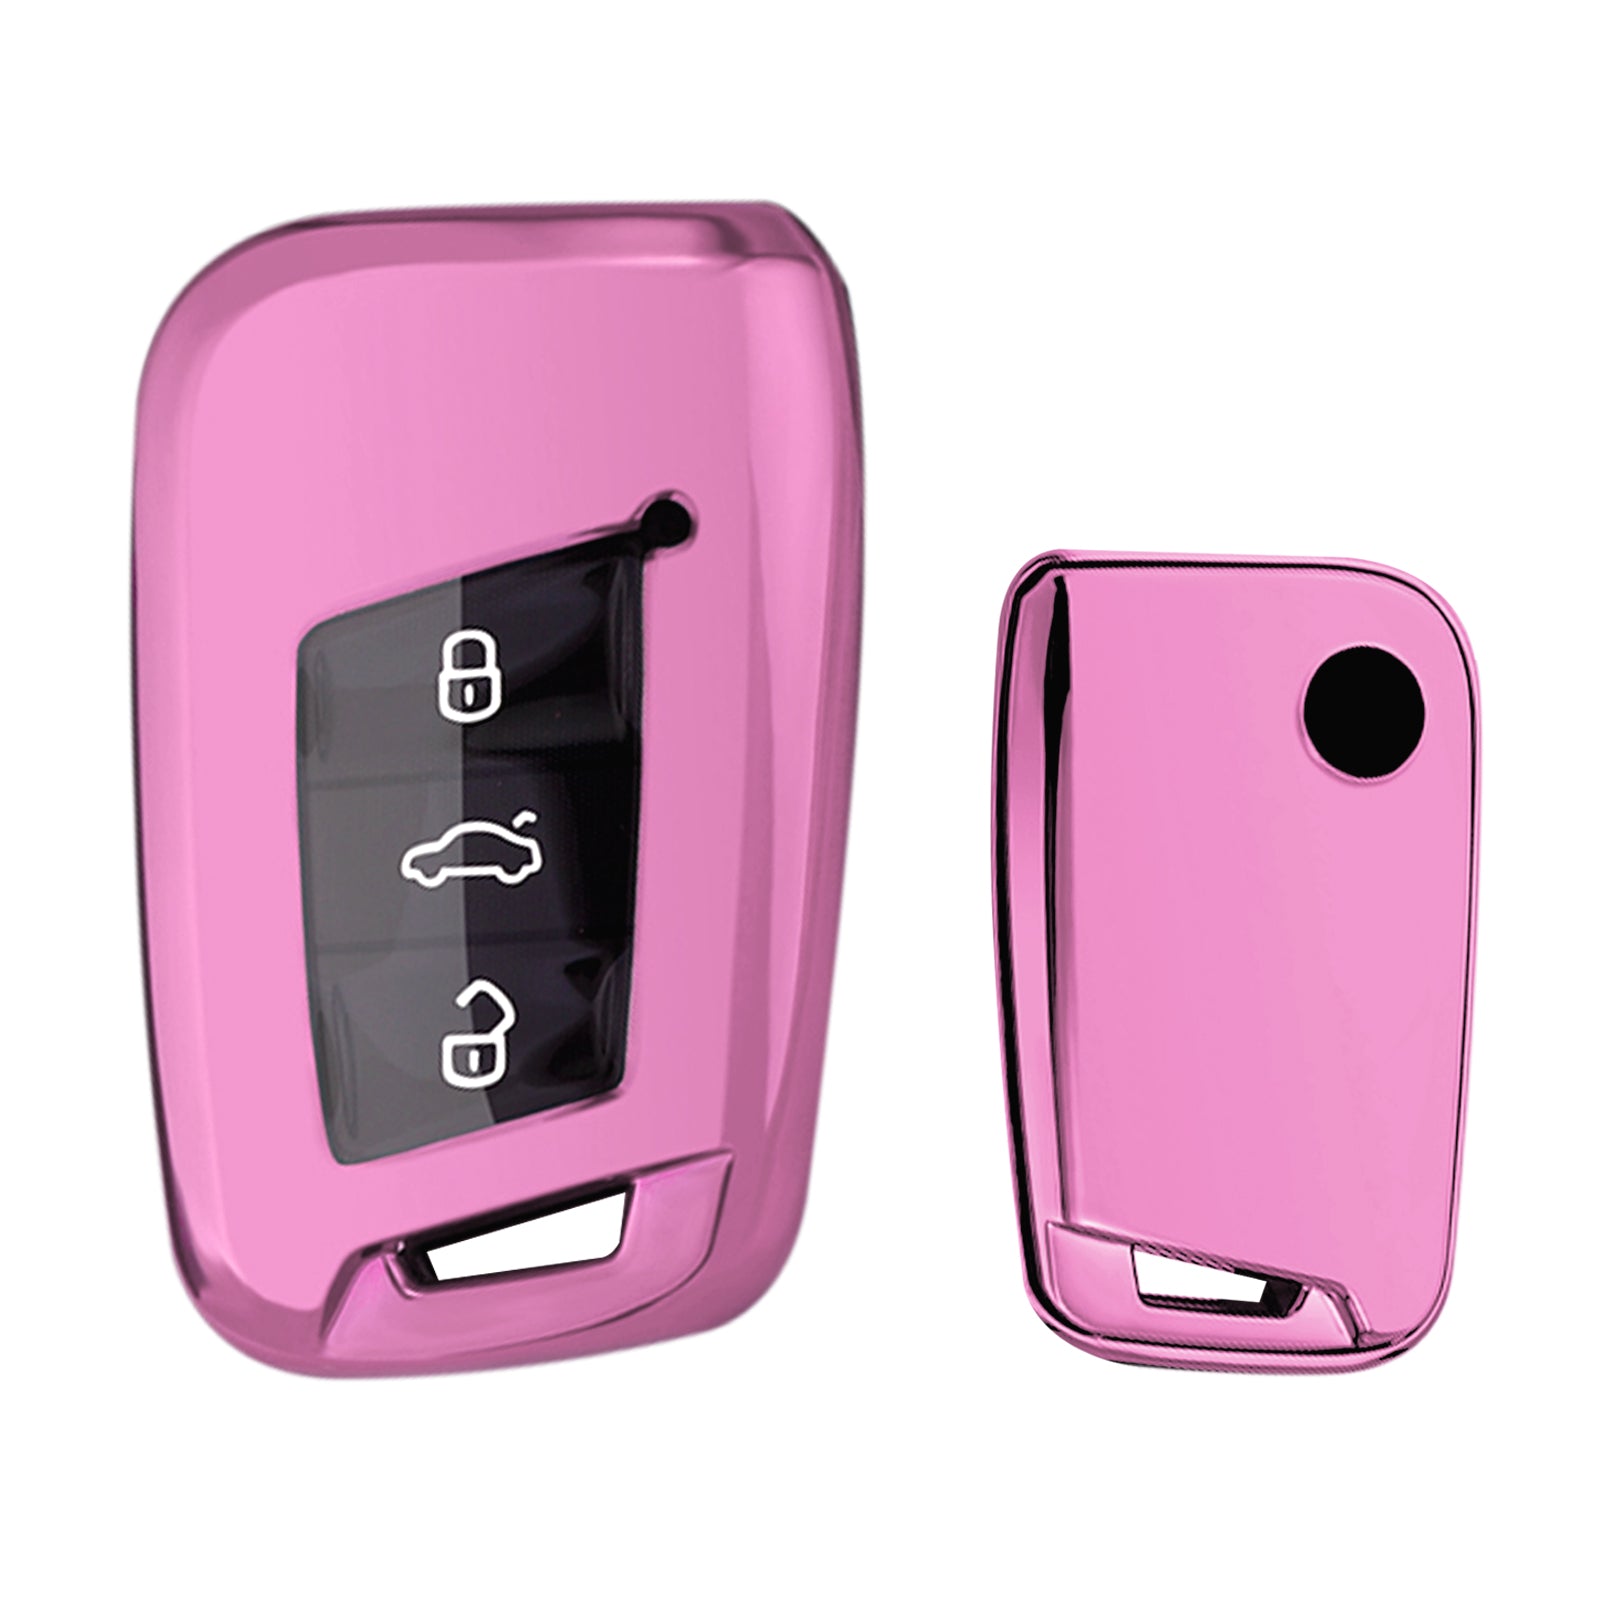 Minimalist Key Fob Pink